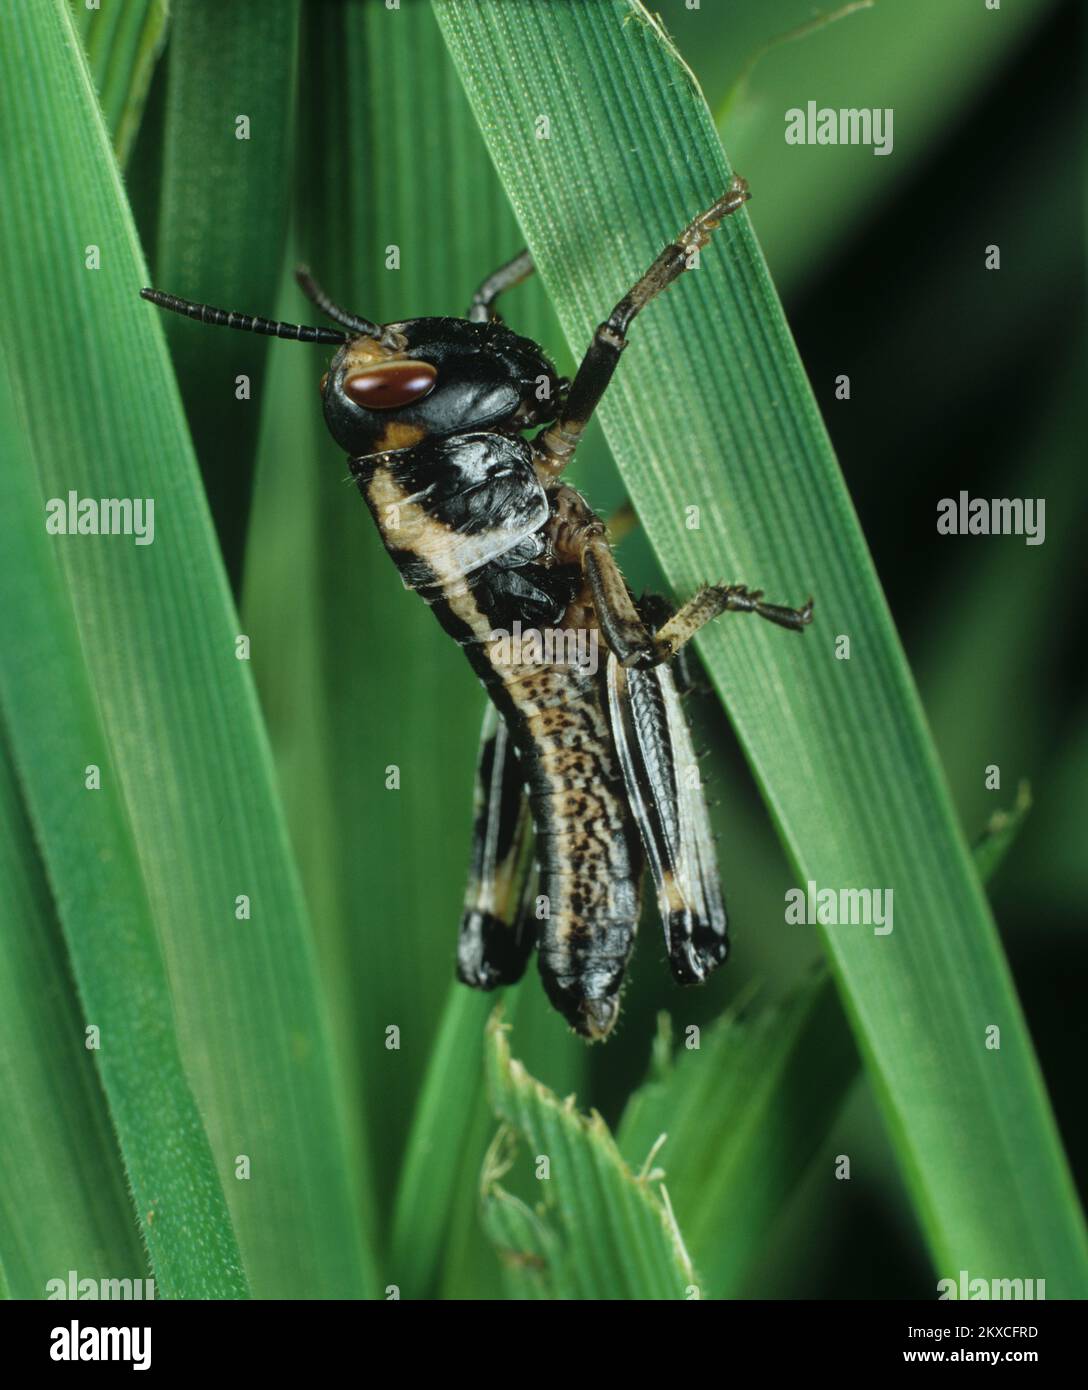 Criquet pèlerin (Schistocerca gregaria) noir foncé, jeune trémie nymphe se nourrissant sur les feuilles de blé, studio Banque D'Images